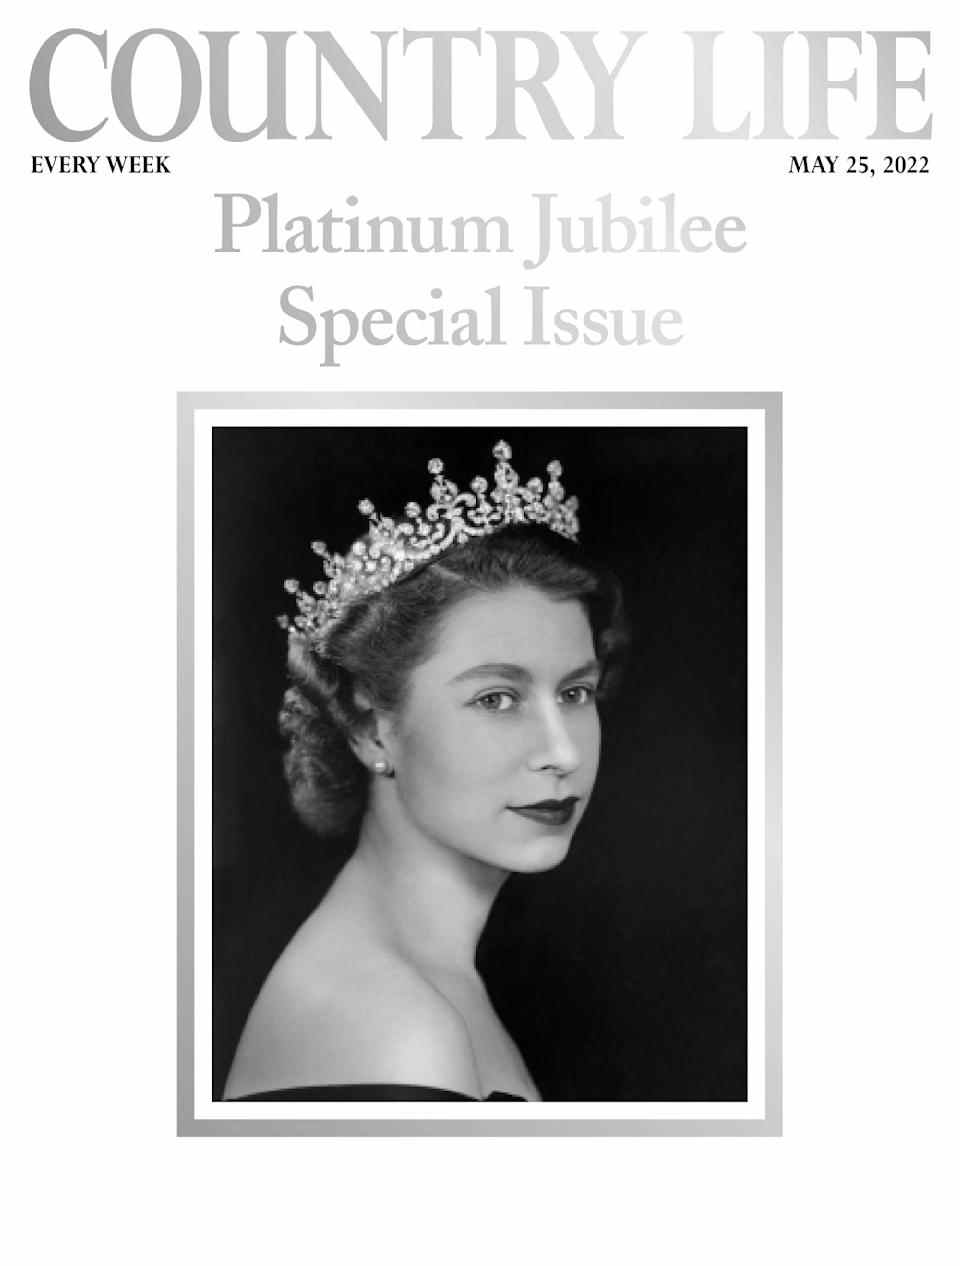 Couverture Country Life pour l'édition Platinum Jubilee en vente le 25 mai 